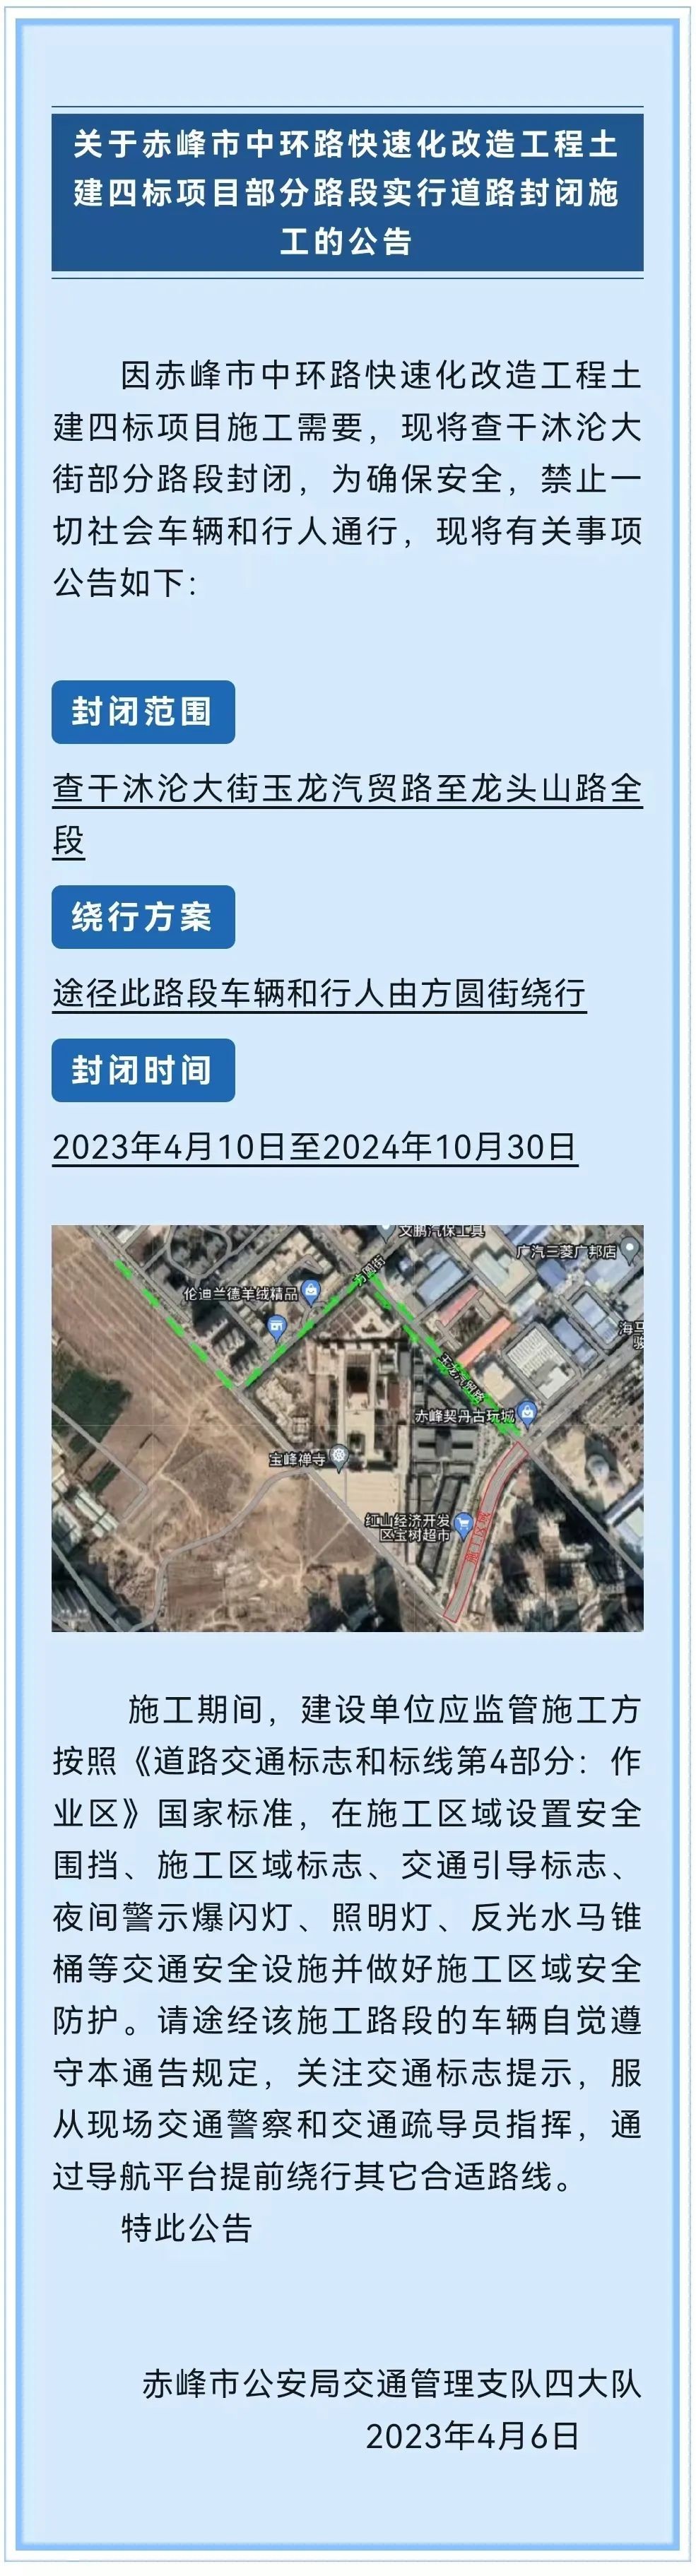 关于赤峰市中环路改造工程道路封闭施工公告